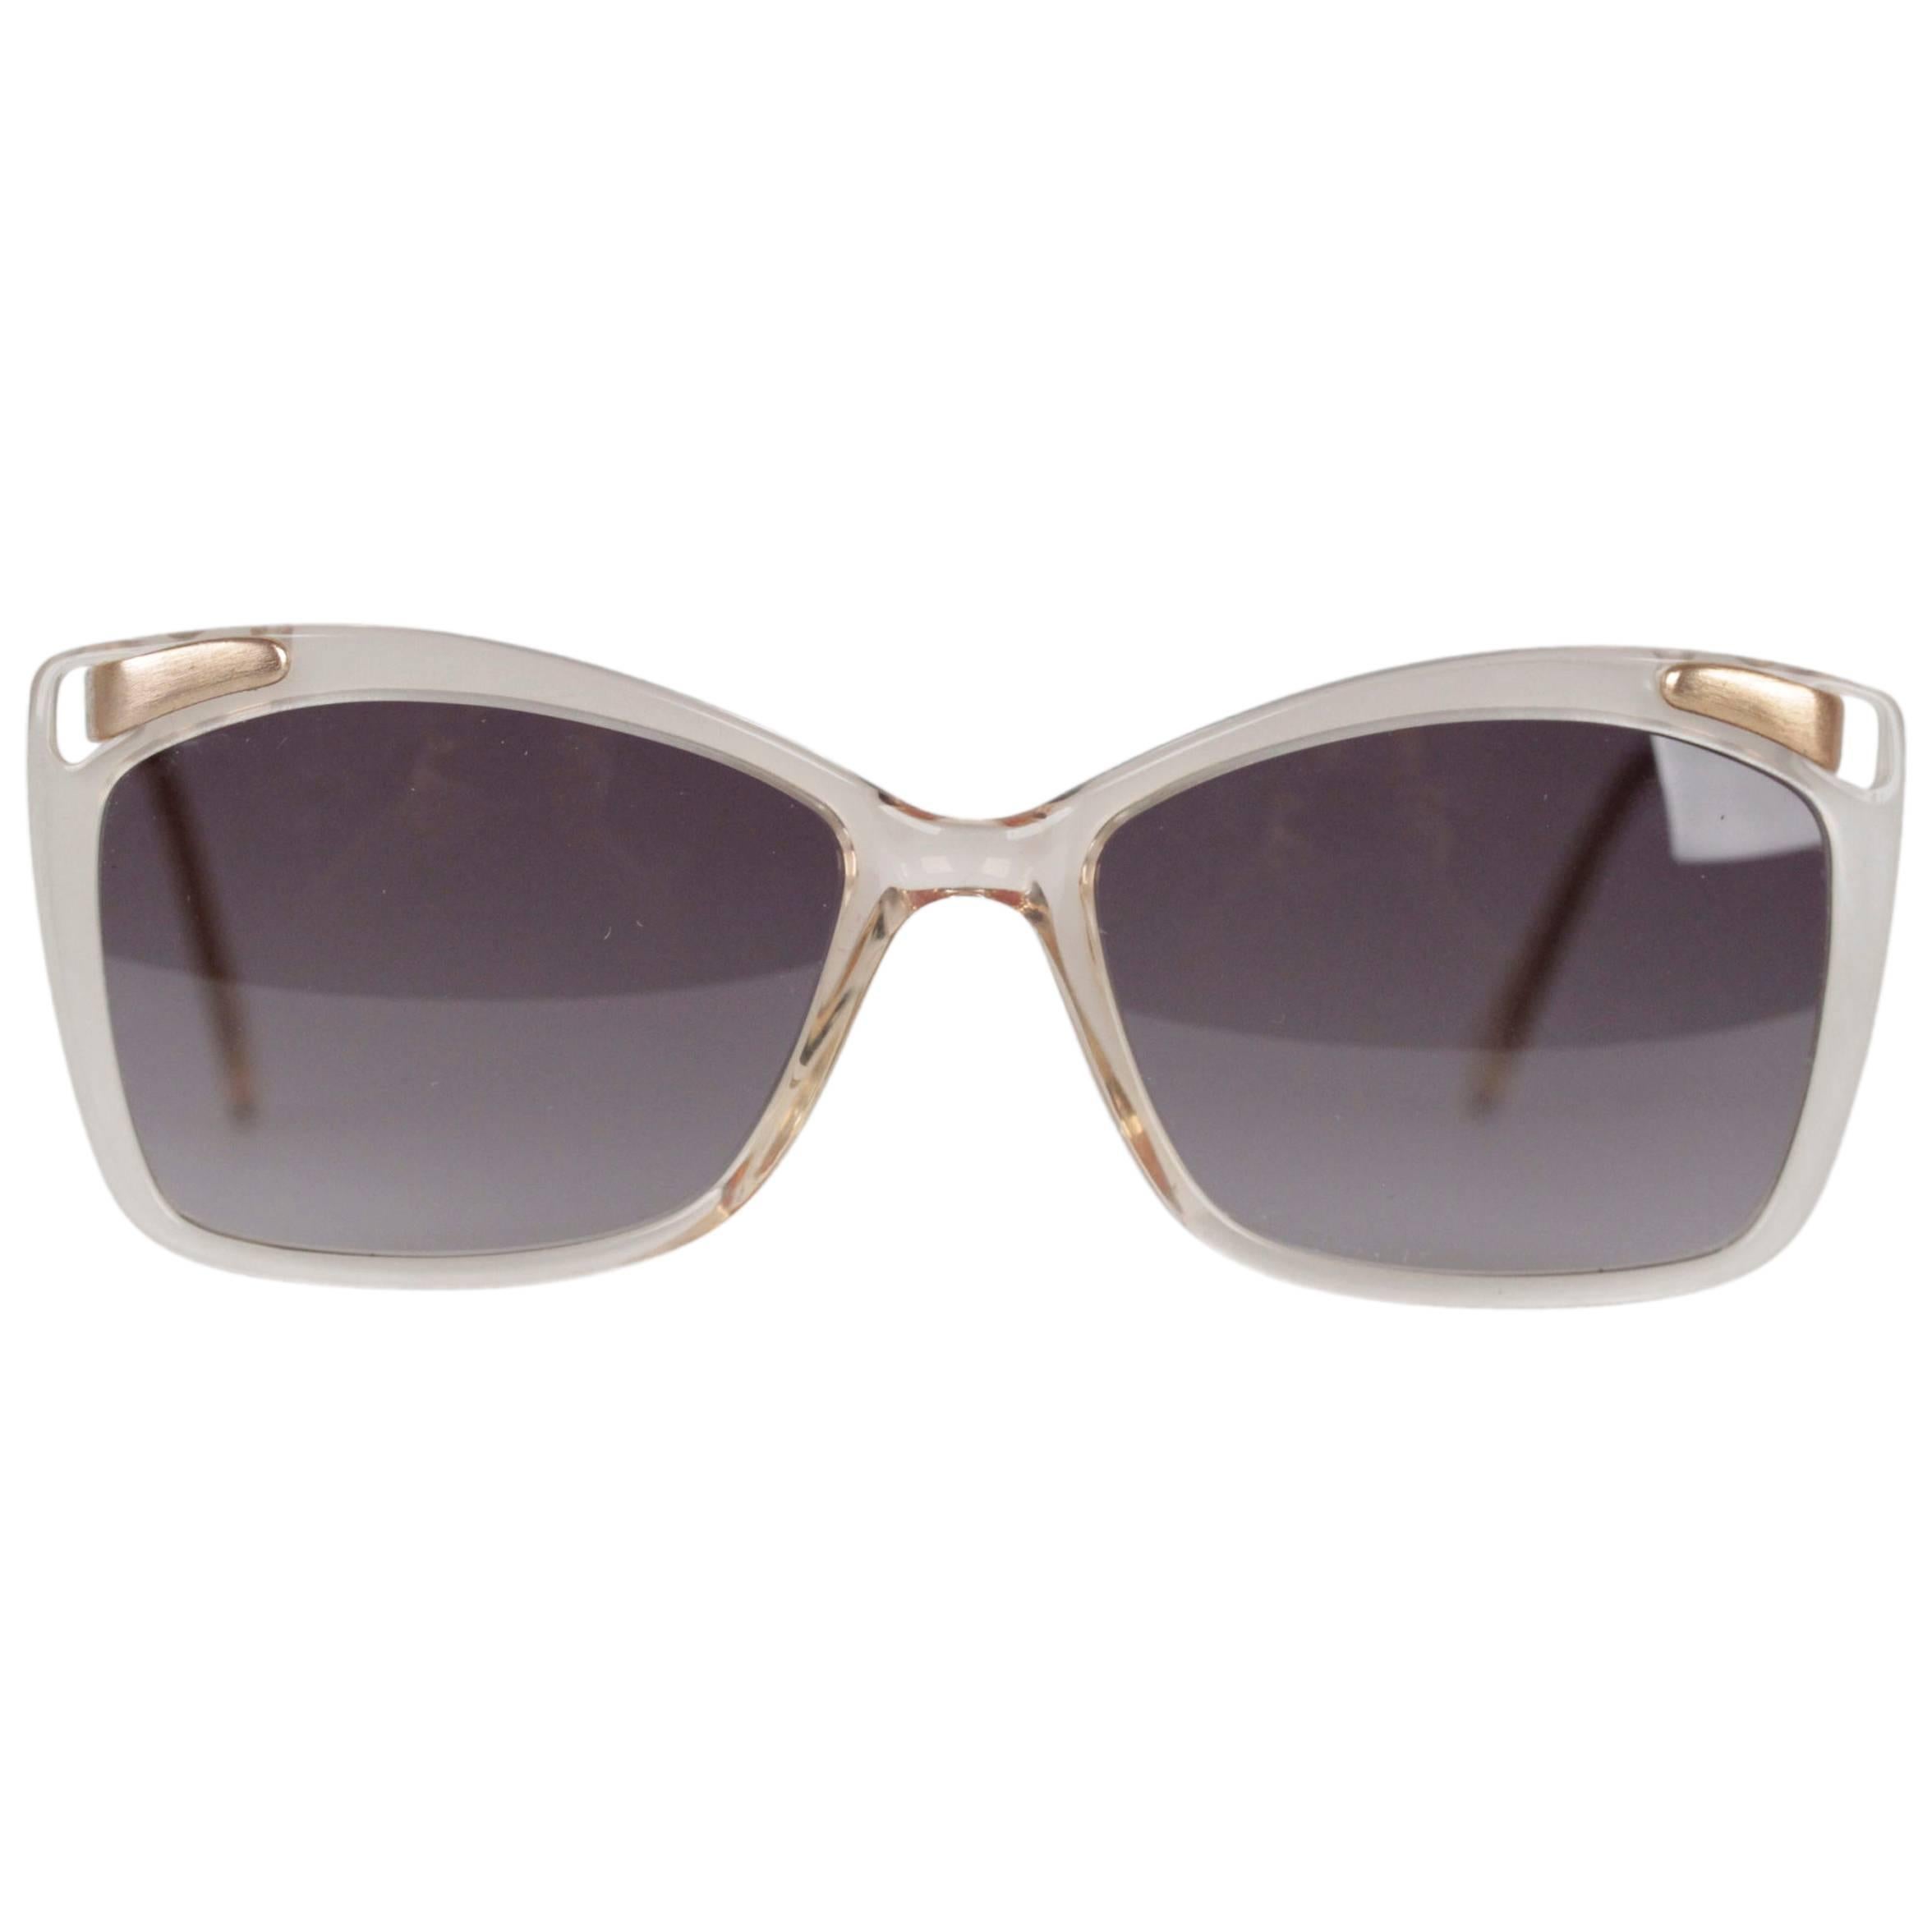 LANVIN VINTAGE MINT Sunglasses Ivory/Gold FRAME FRANCE 53/20 OL 521 076 w/CASE